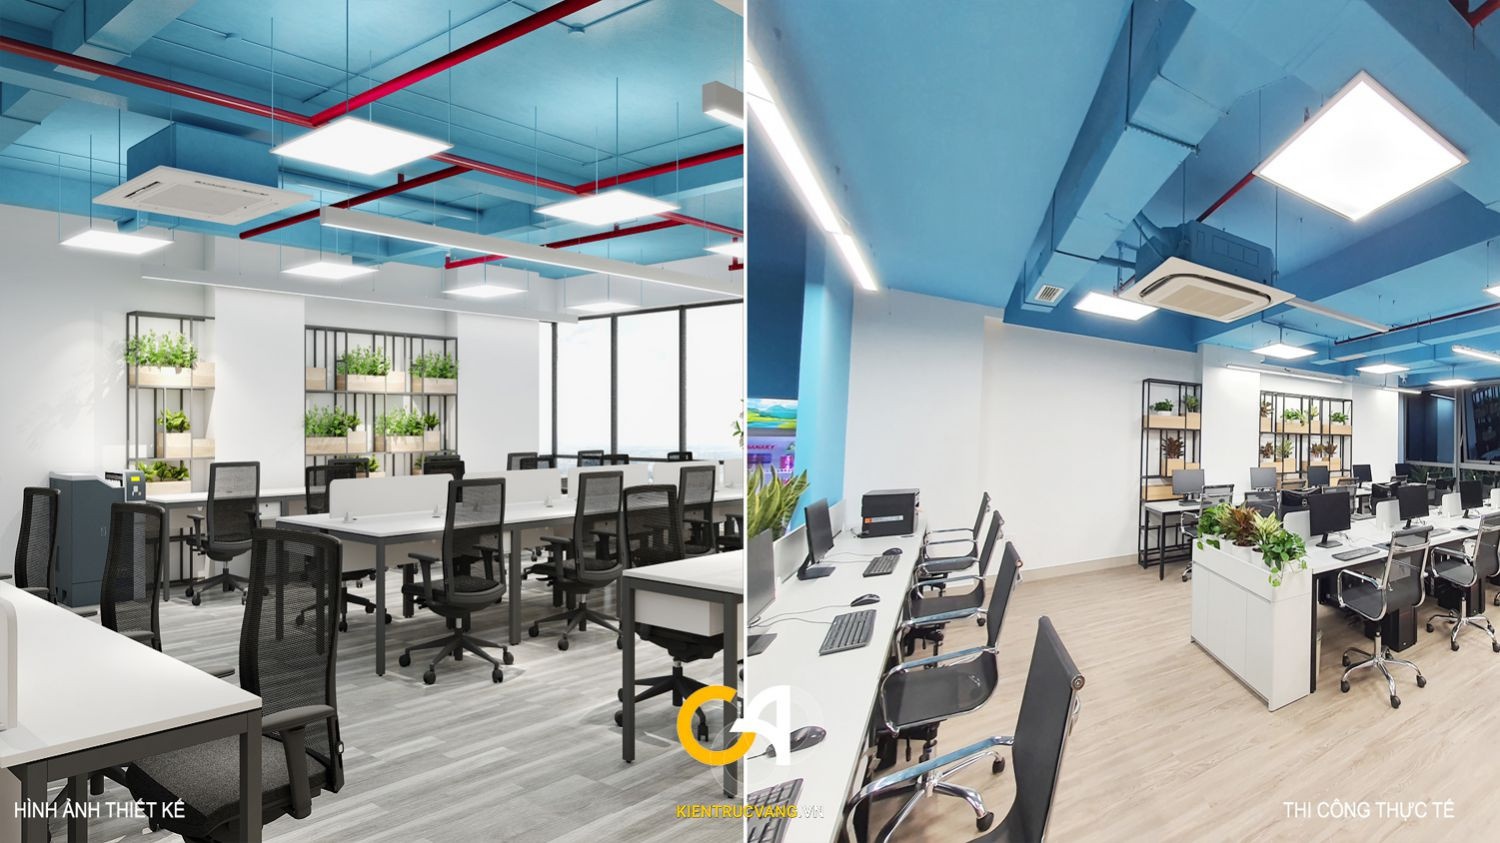 Thiết kế nội thất văn phòng so sánh 3D và thực tế